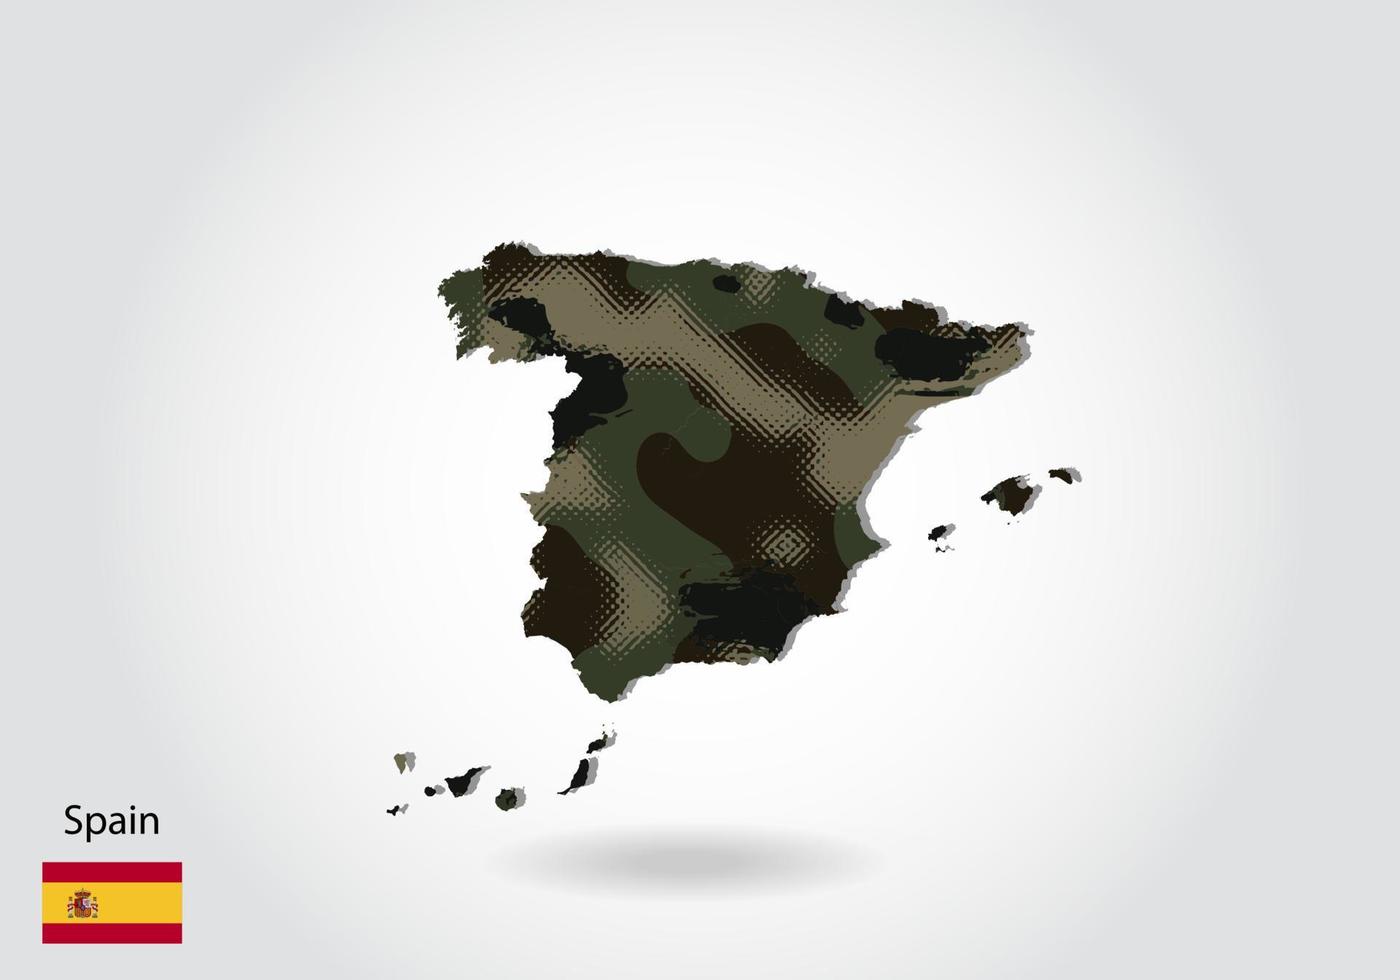 spanienkarte mit tarnmuster, wald - grüne textur in der karte. militärisches konzept für armee, soldat und krieg. Wappen, Flagge. vektor